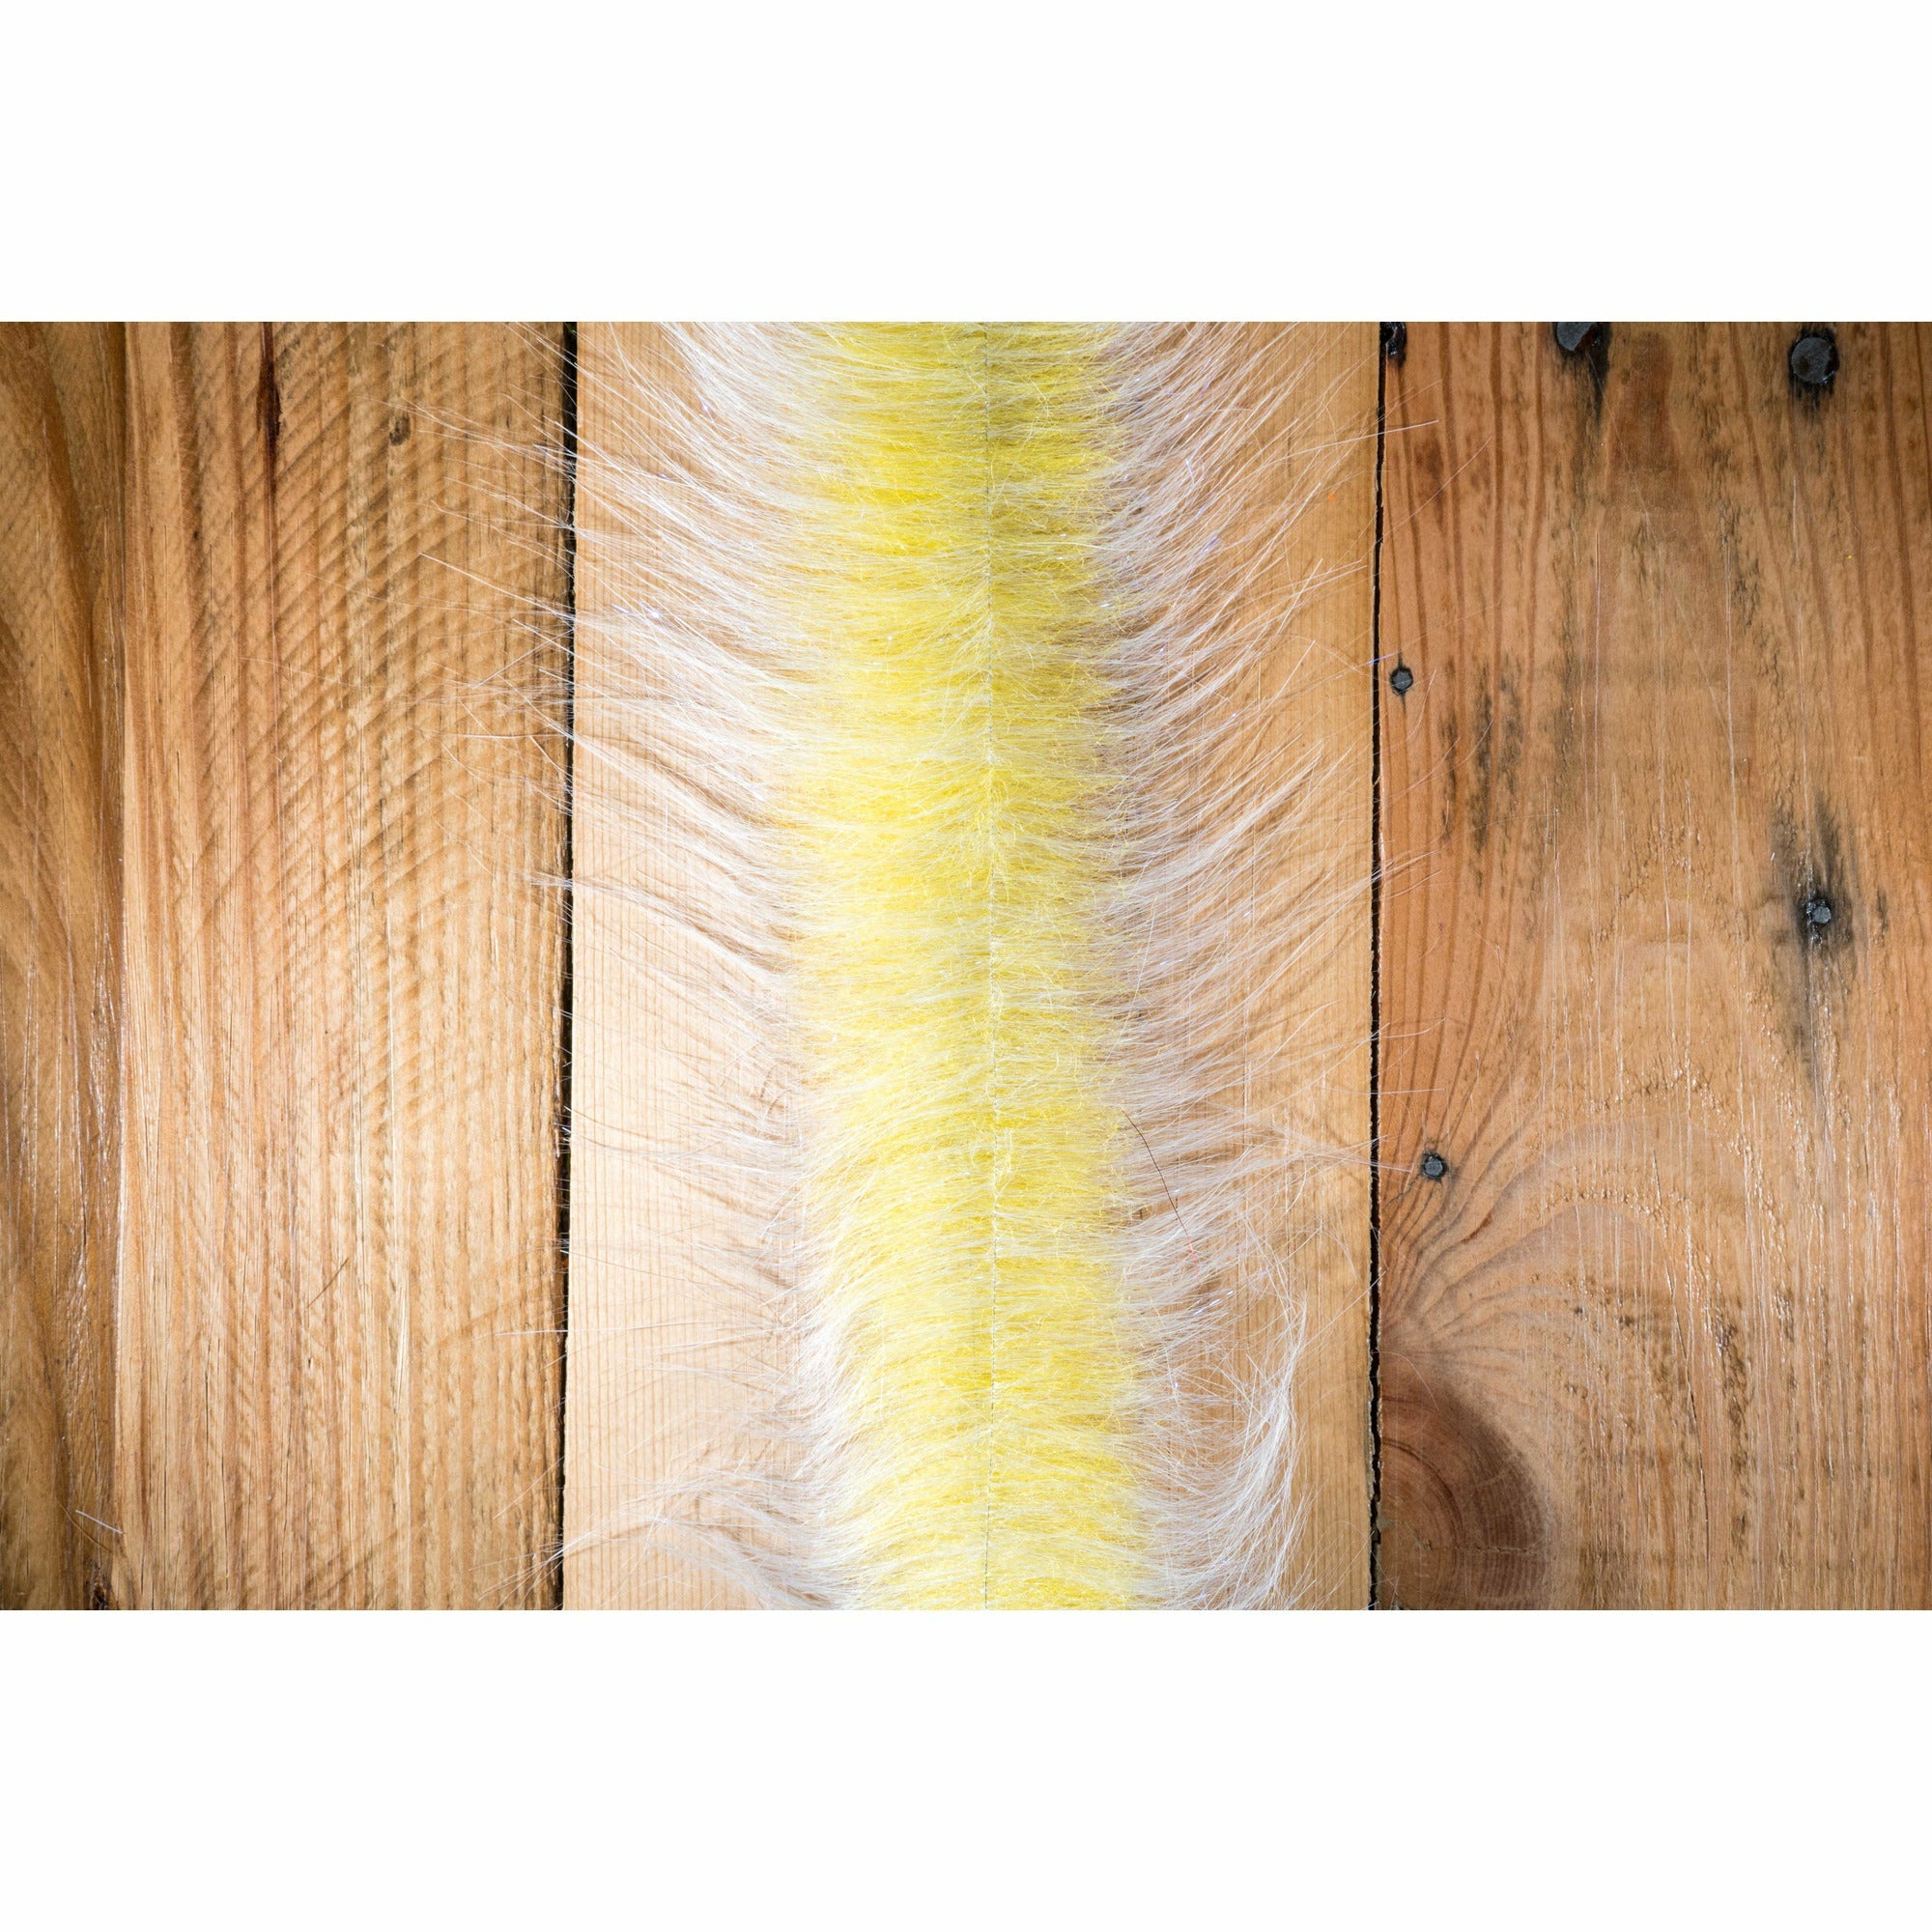 EP Craft Fur Brush 3" - White & Yellow